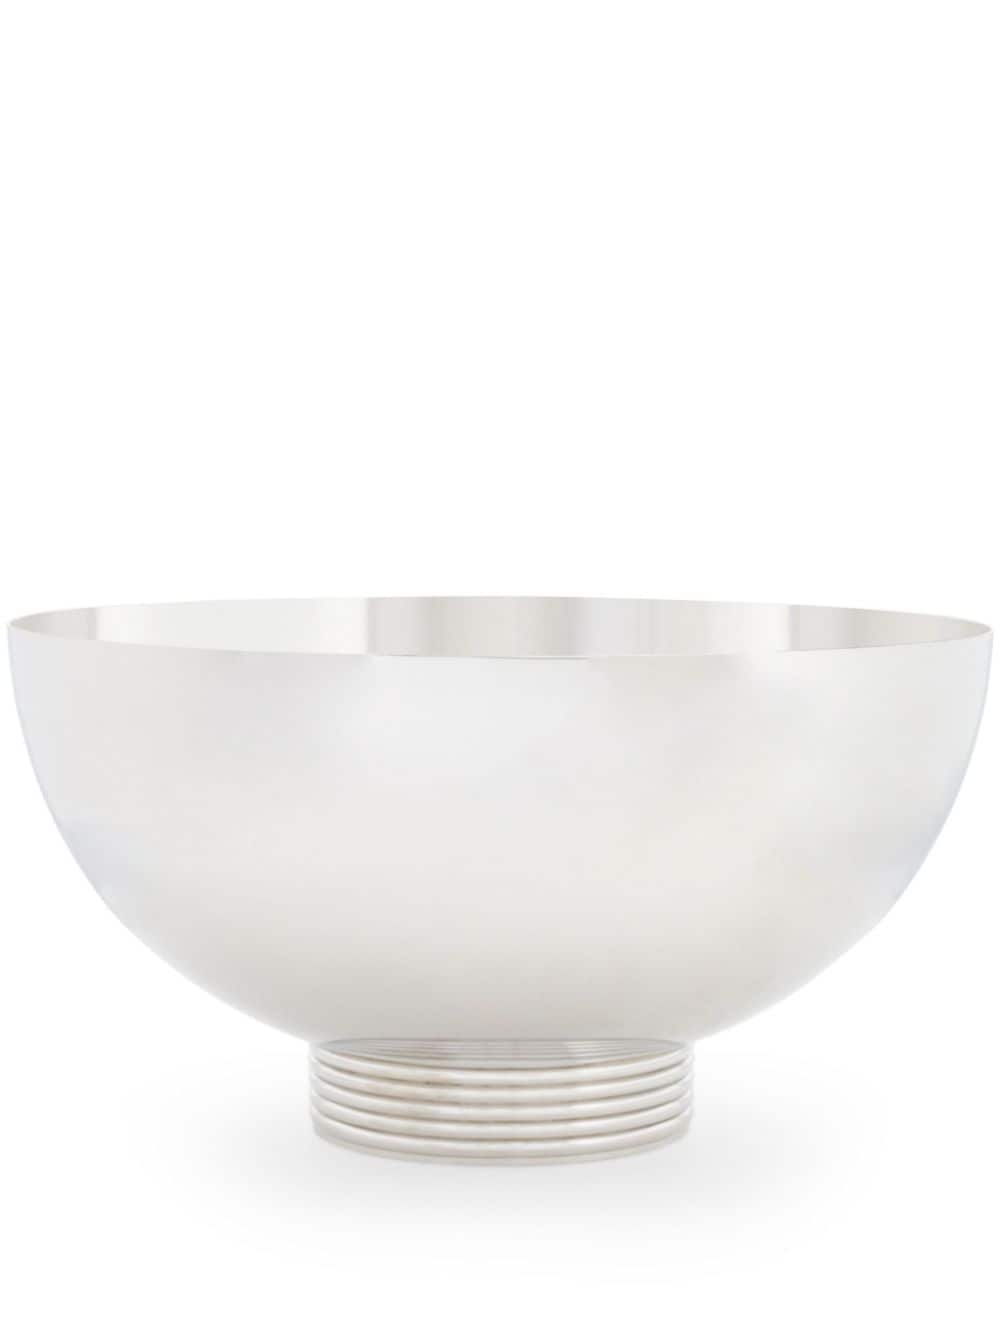 Ralph Lauren Home Thorpe stainless steel centrepiece bowl - SILVER von Ralph Lauren Home